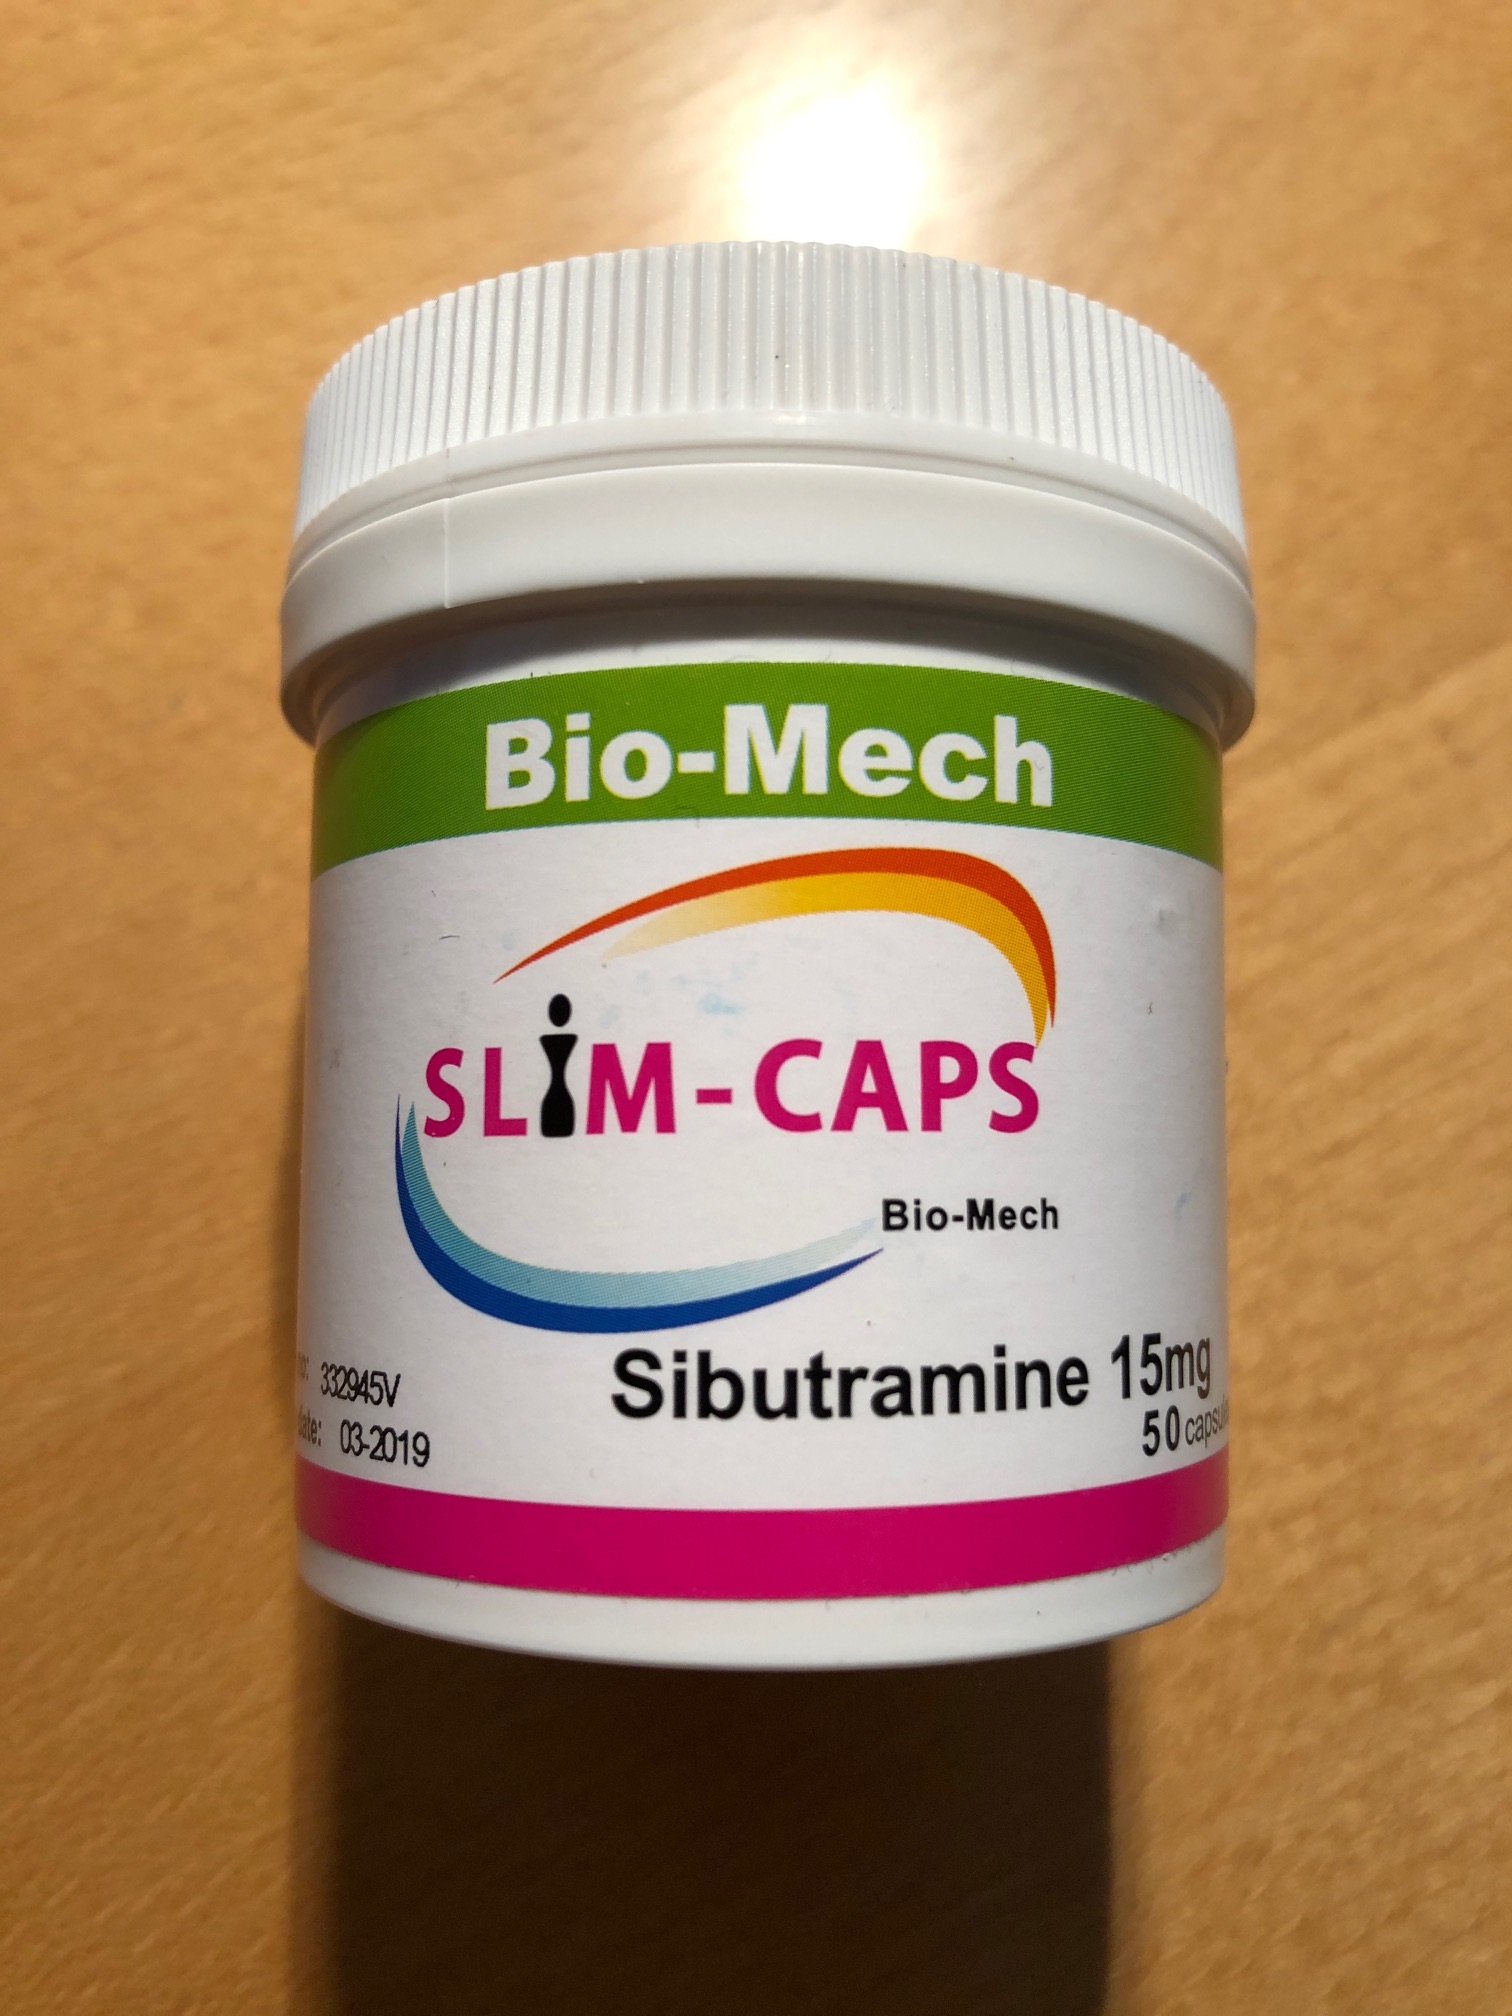 Billede af det ulovlige produkt: Bio-Mech Slim-Caps